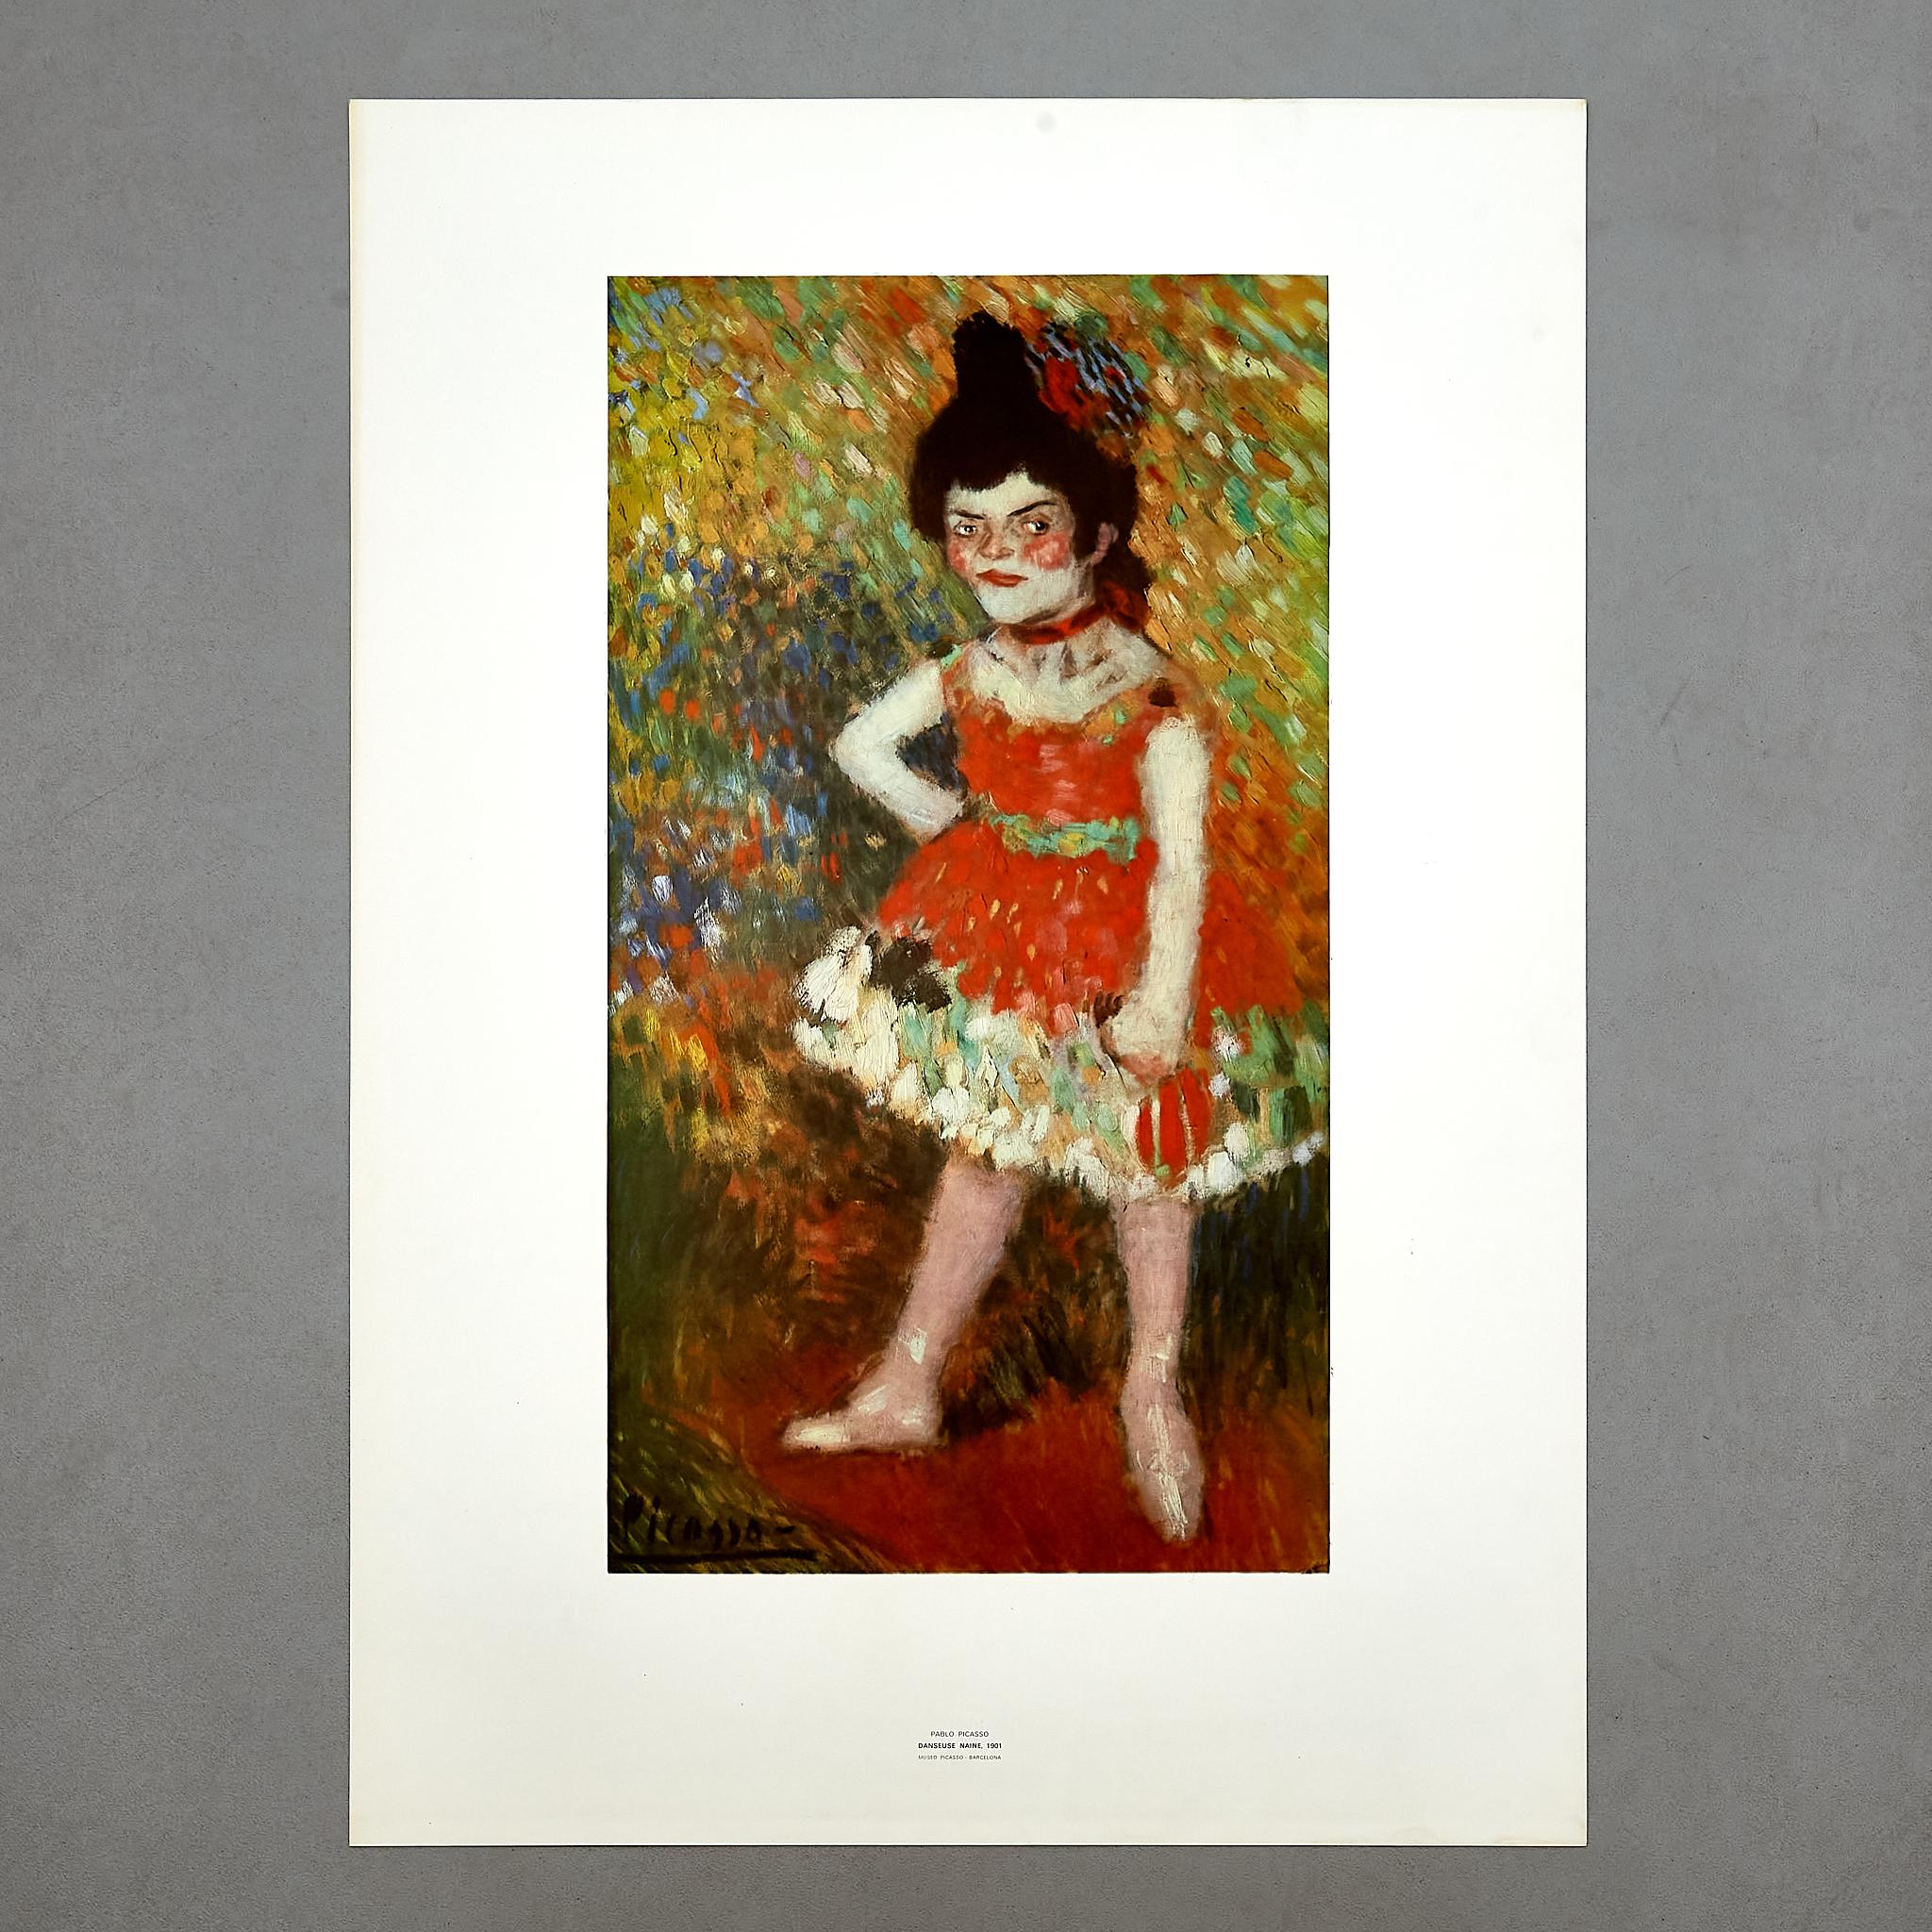 Hochwertiger Druck von Danseuse Naine 1901 von Pablo Picasso.

Hergestellt in Spanien, ca. 1966.

In ursprünglichem Zustand mit geringen Gebrauchsspuren, die dem Alter und dem Gebrauch entsprechen, wobei eine schöne Patina erhalten